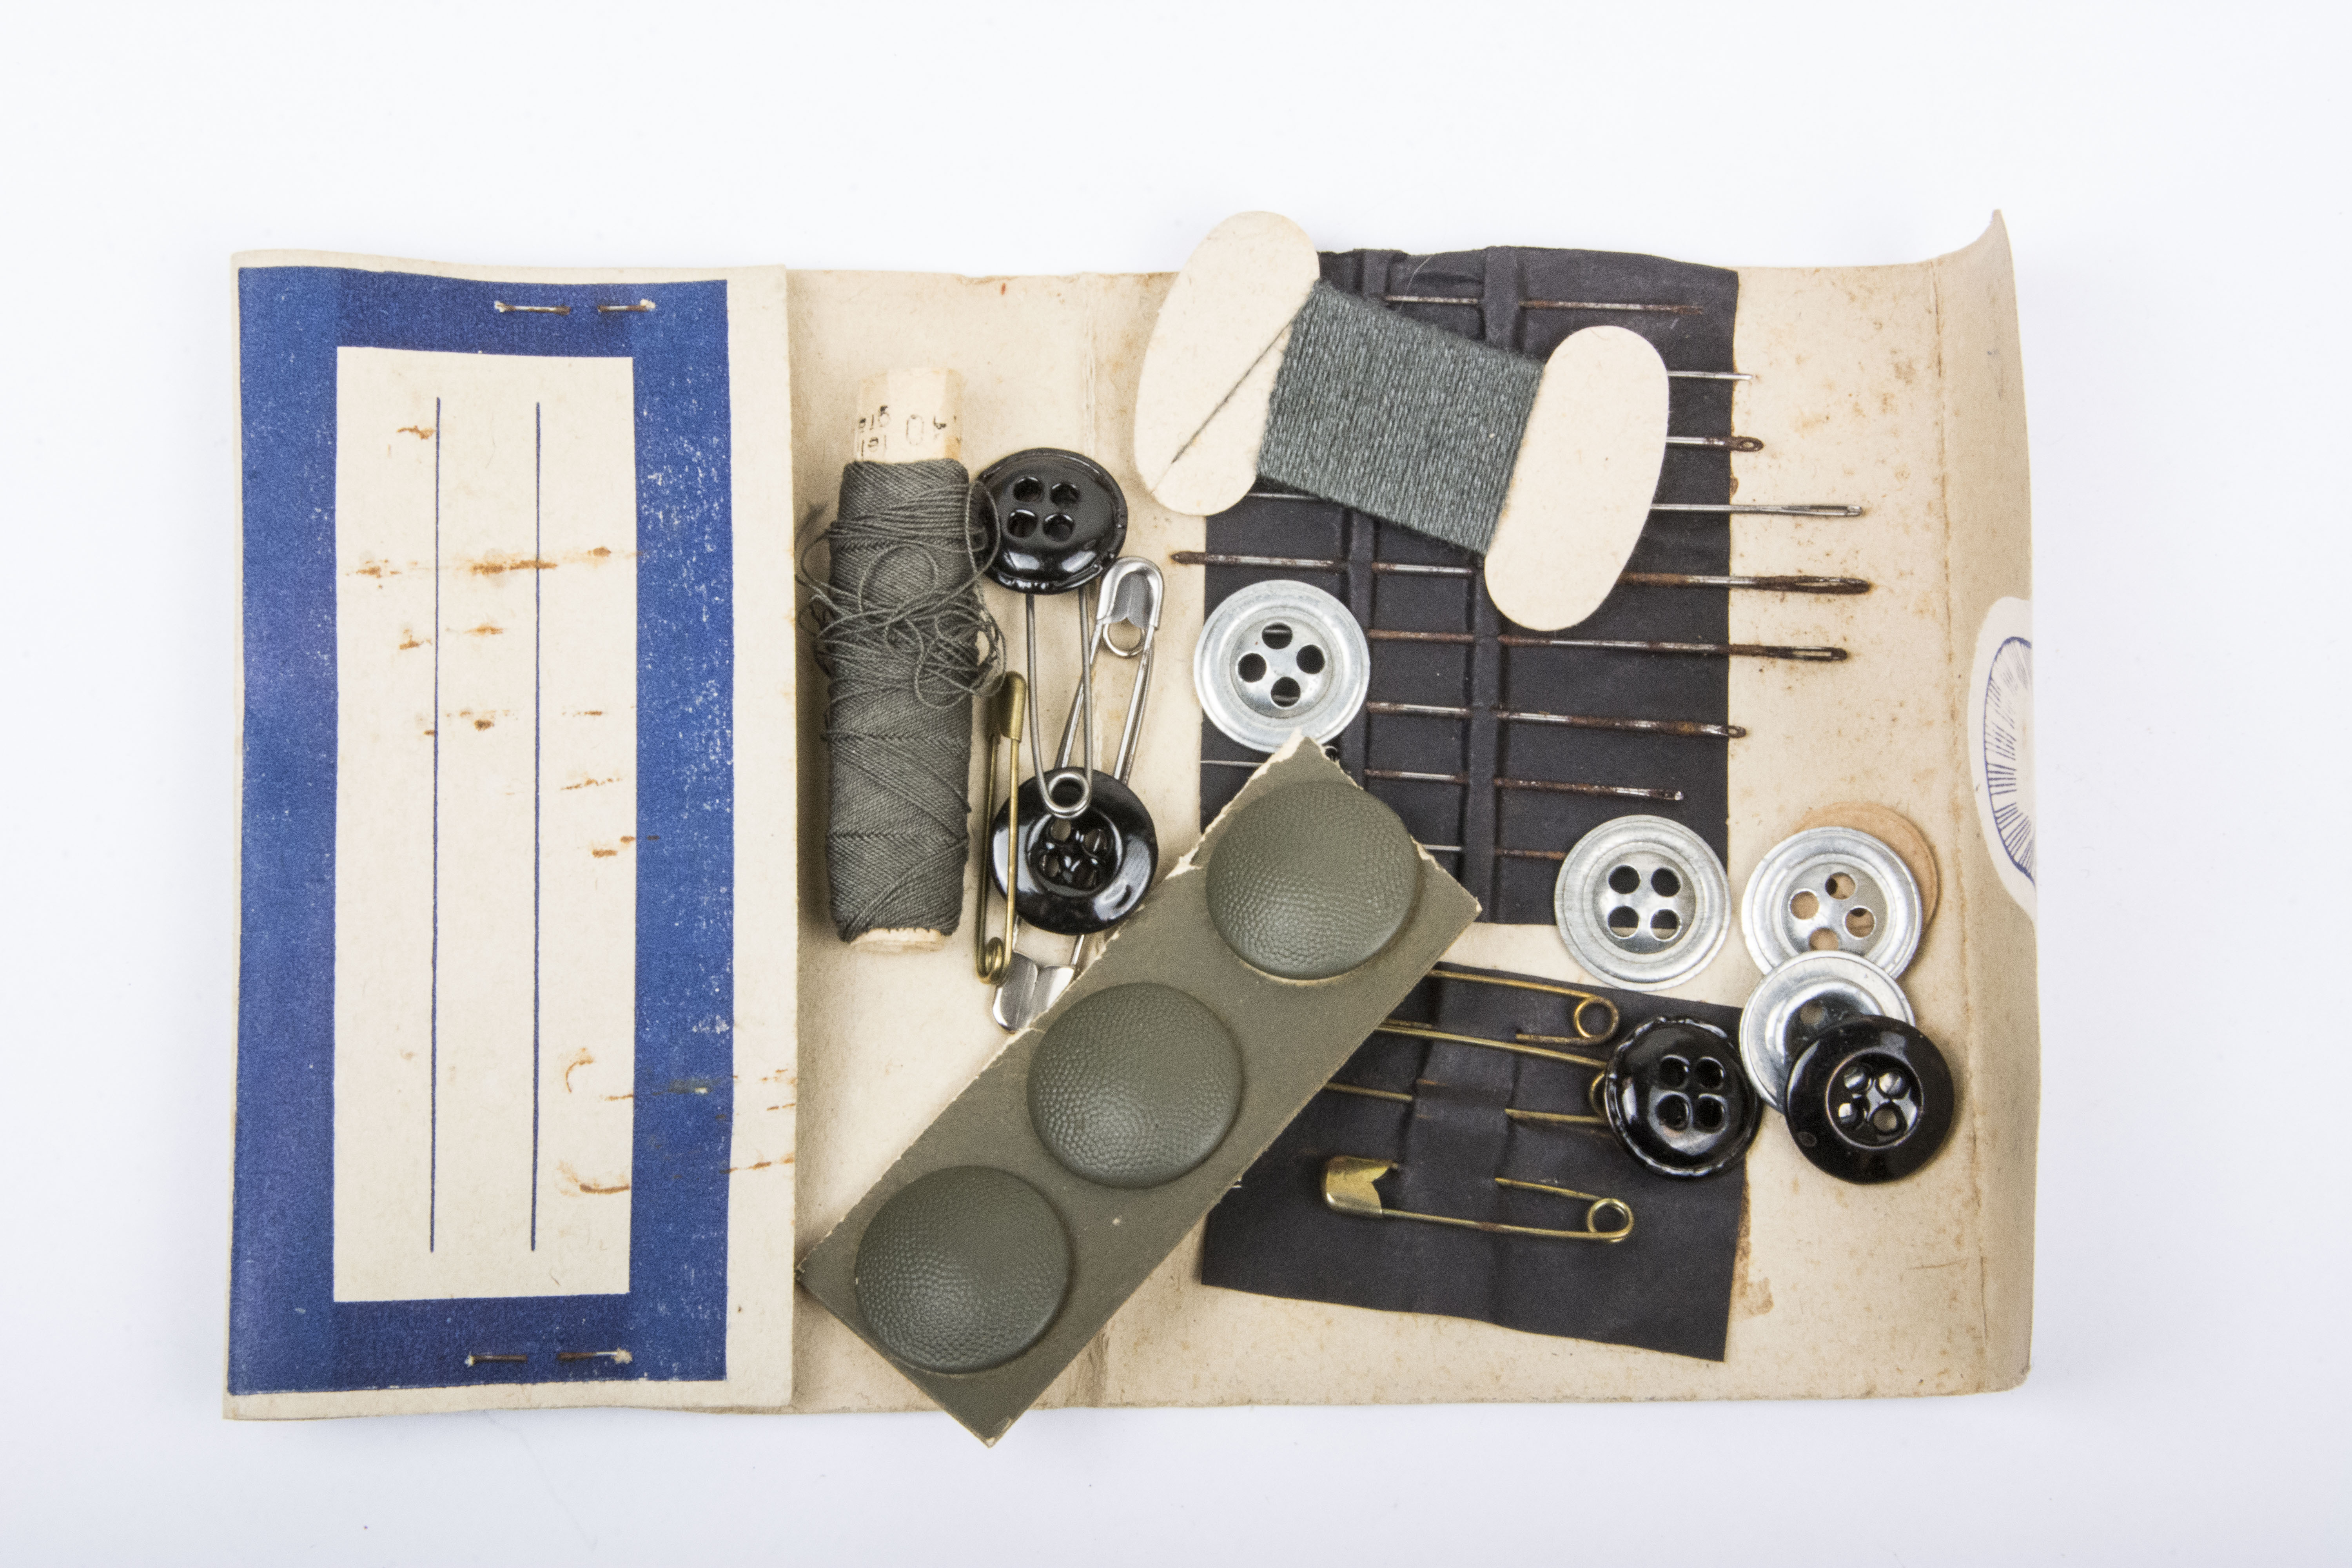 German sewing kit